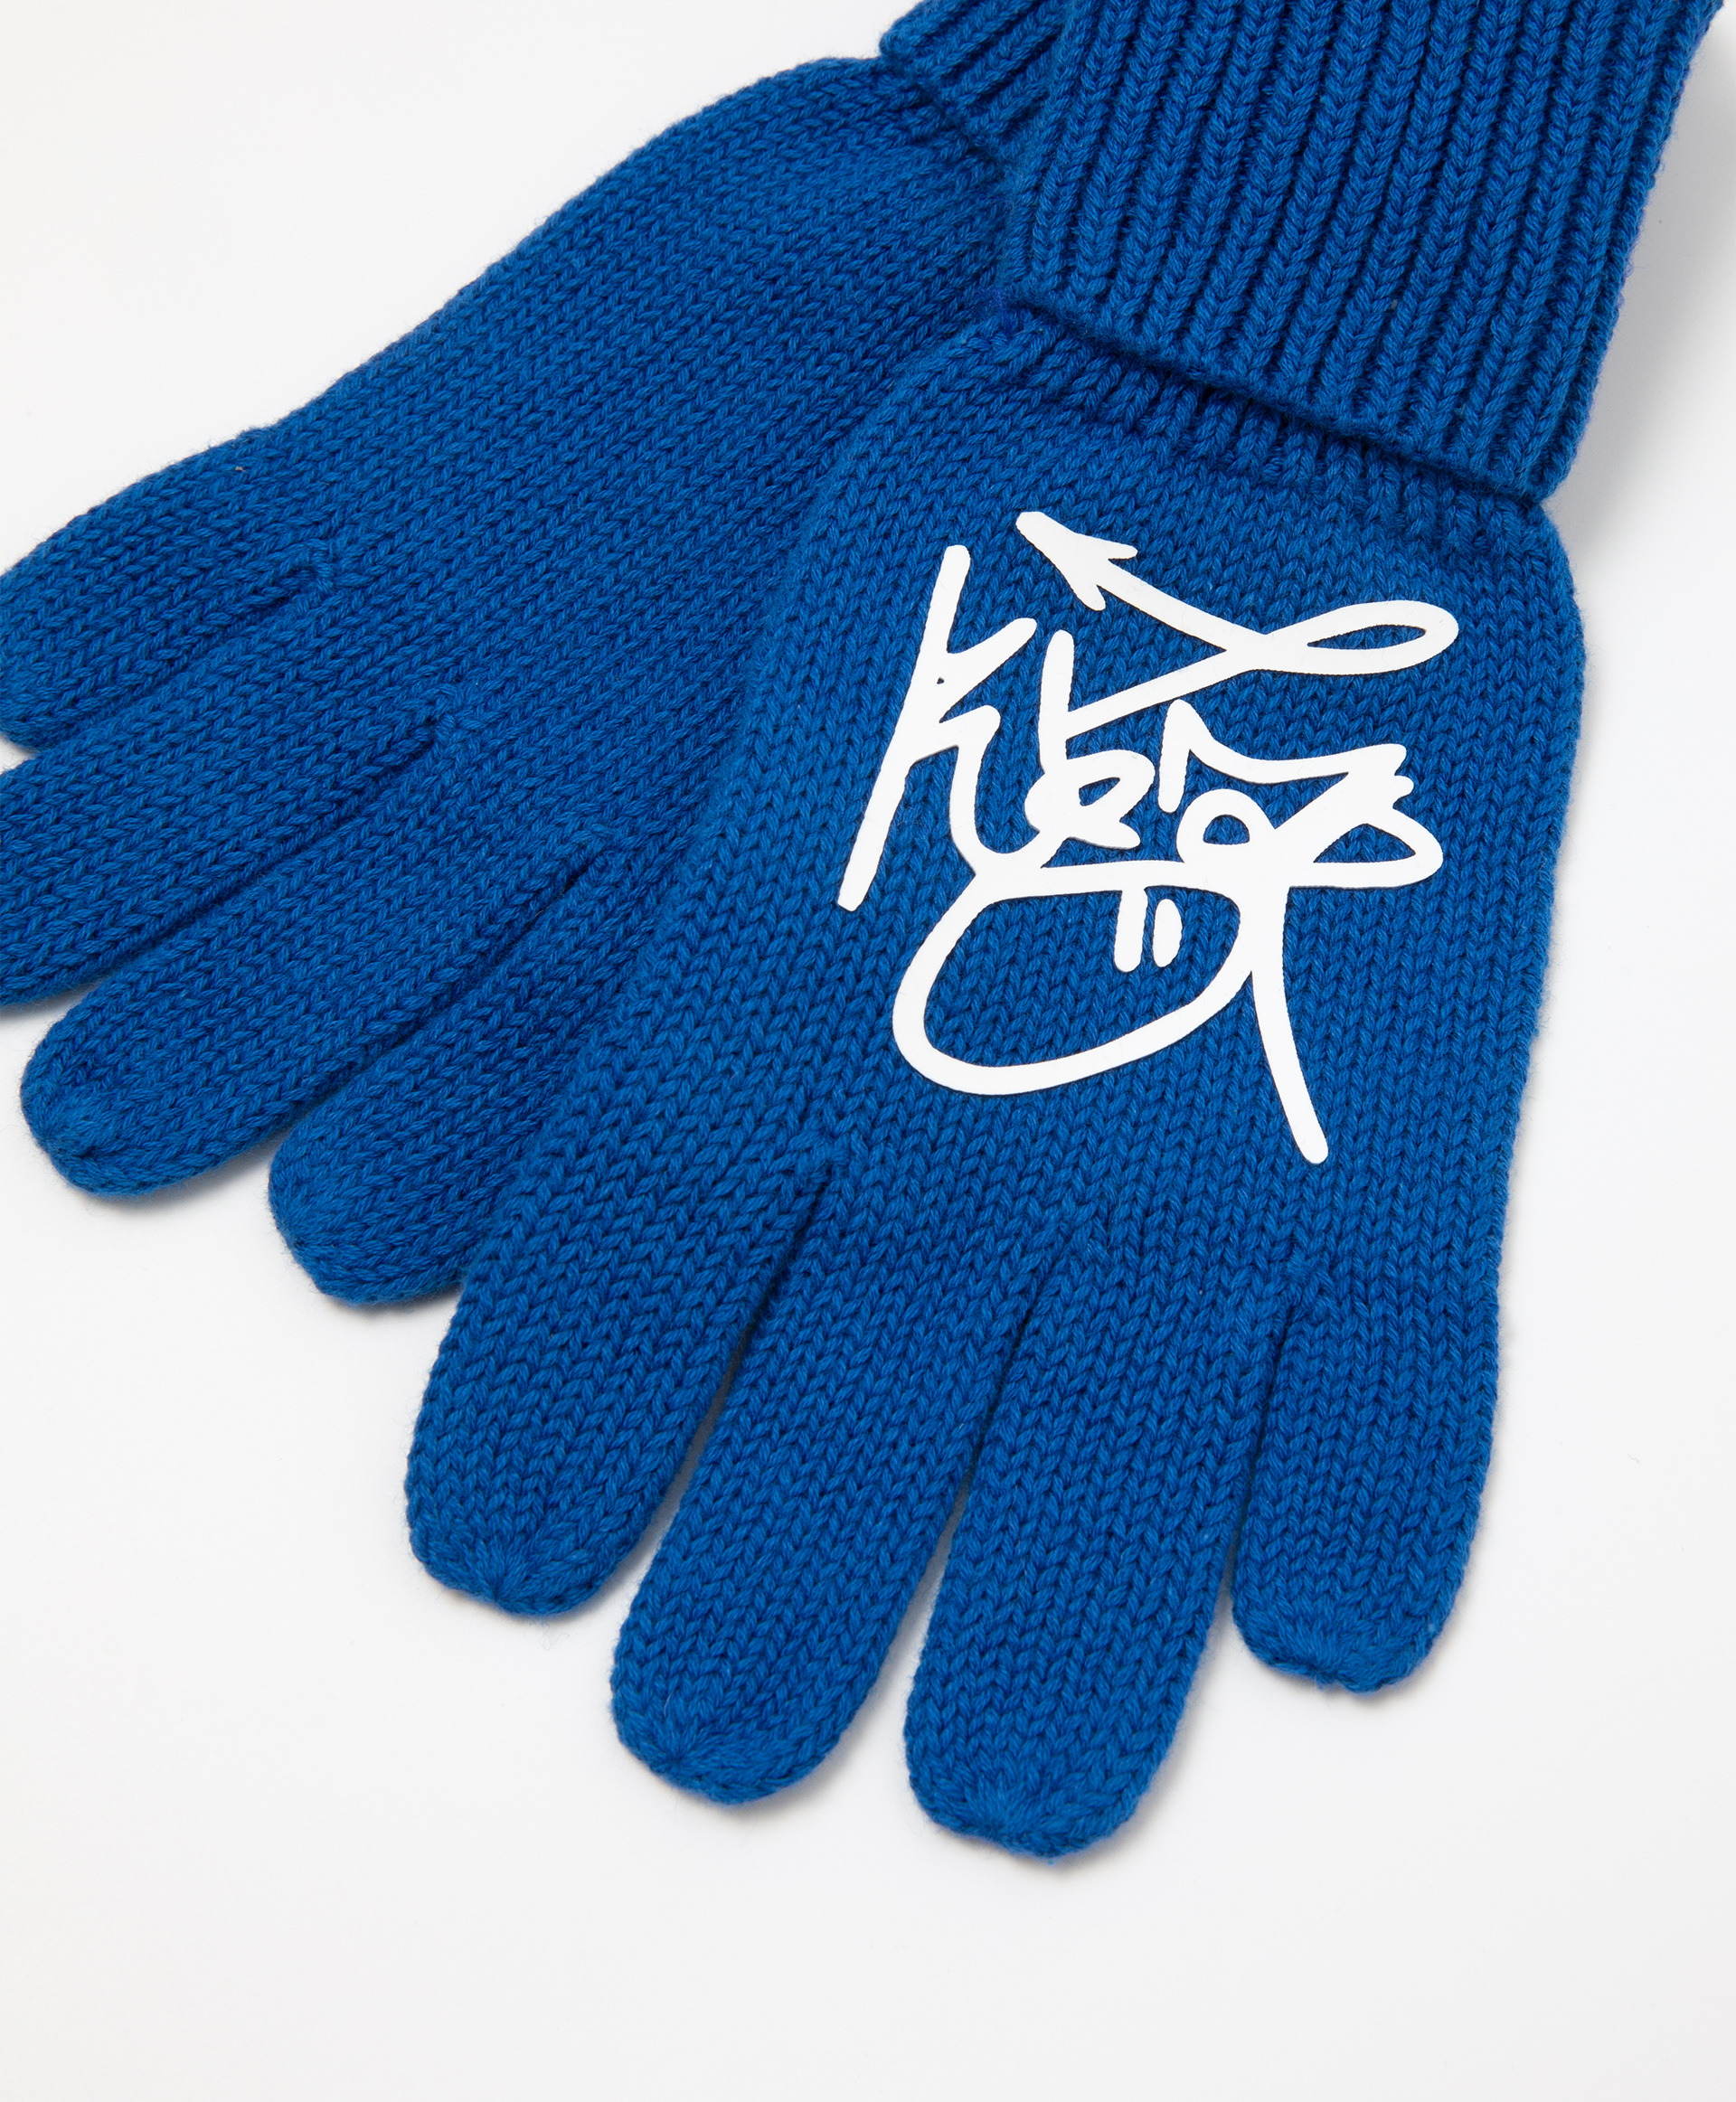 Перчатки вязаные с крупным шрифтовым принтом Gulliver 22206BMC7607, размер 14, цвет синий - фото 3